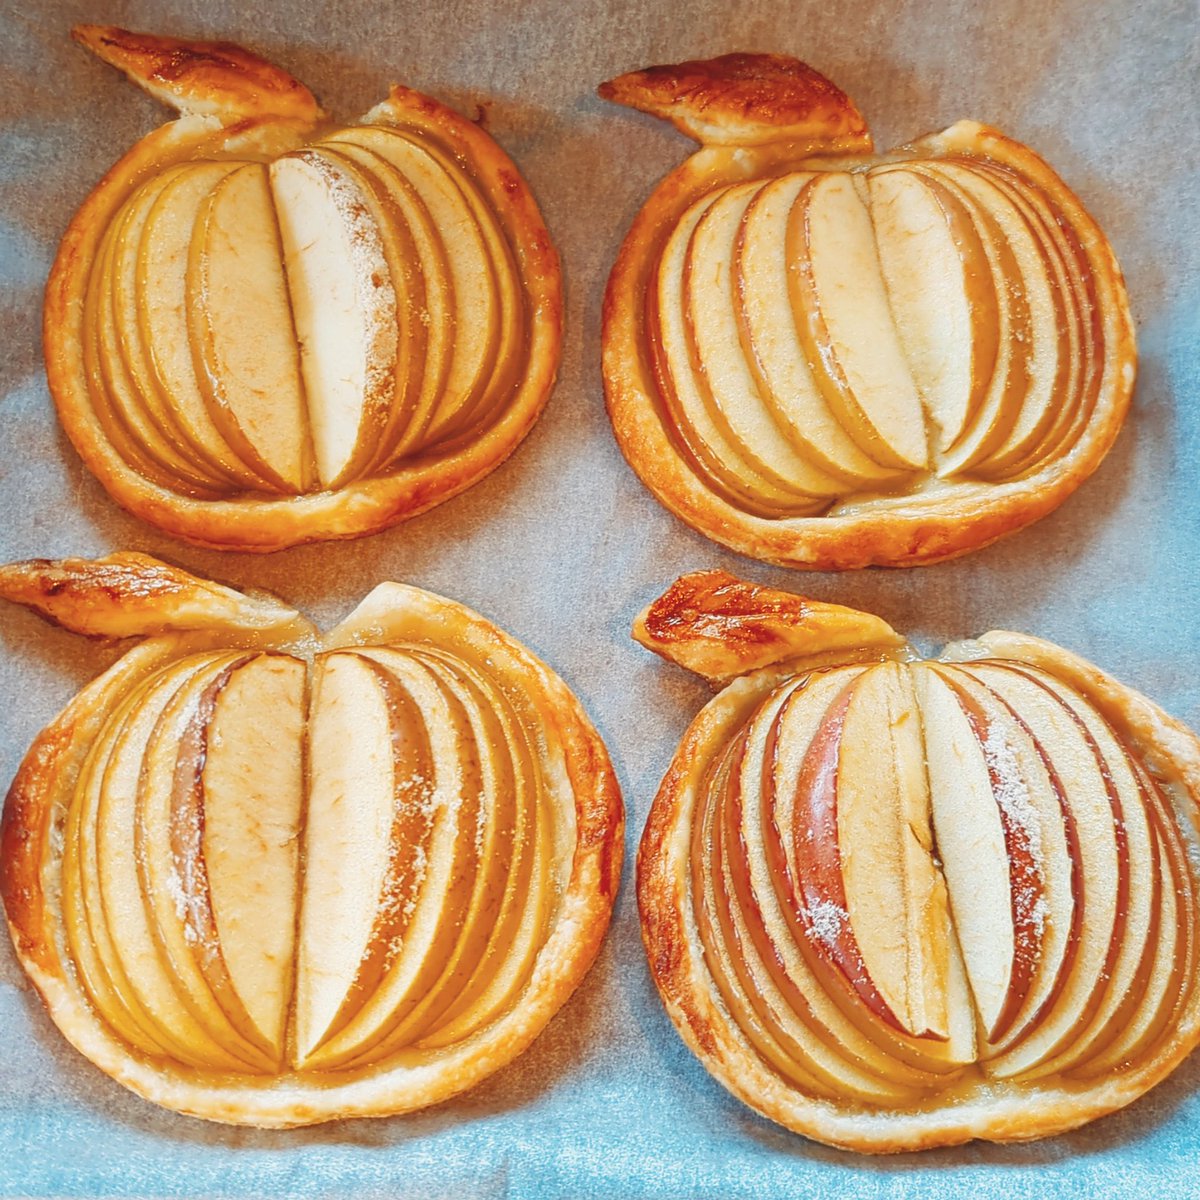 りんごの形のアップルパイ綺麗に焼きあがりました🍎✨
#カフェ巡り #お腹ぺこりん部 #手作りケーキ